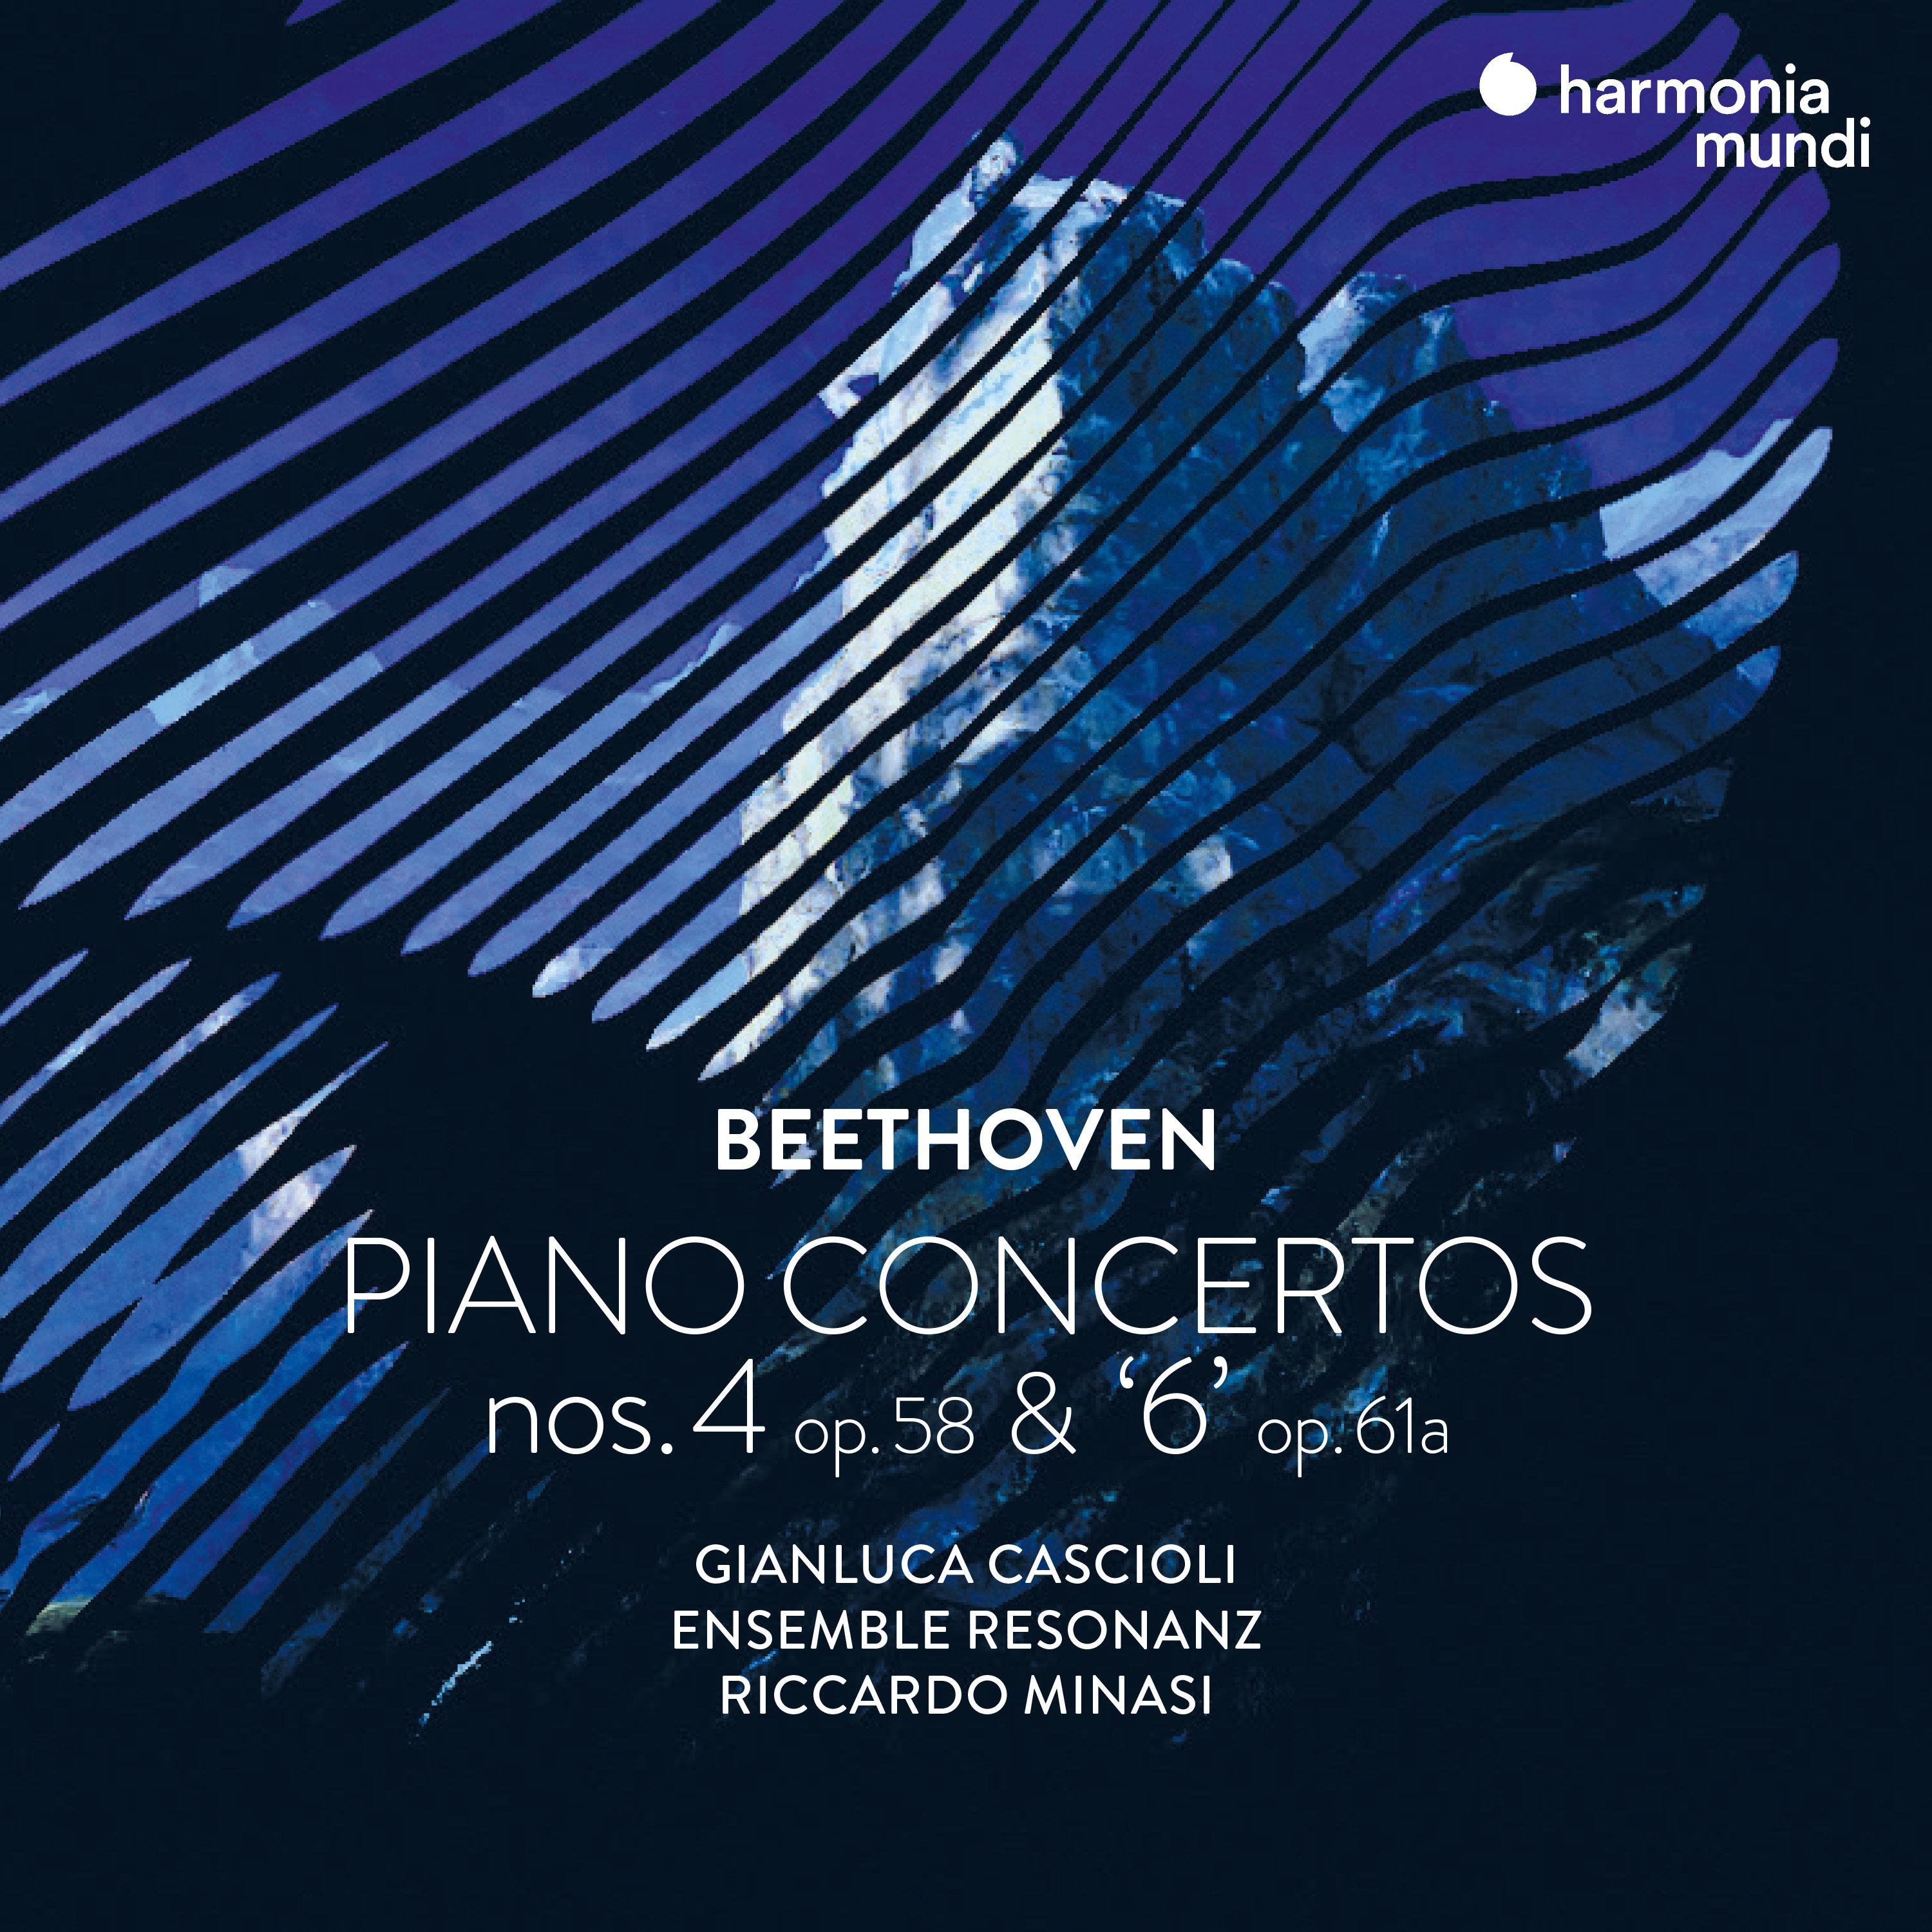 Gianluca Cascioli - Piano Concerto No. 4 in G Major, Op. 58: III. Rondo. Vivace (1808 version)